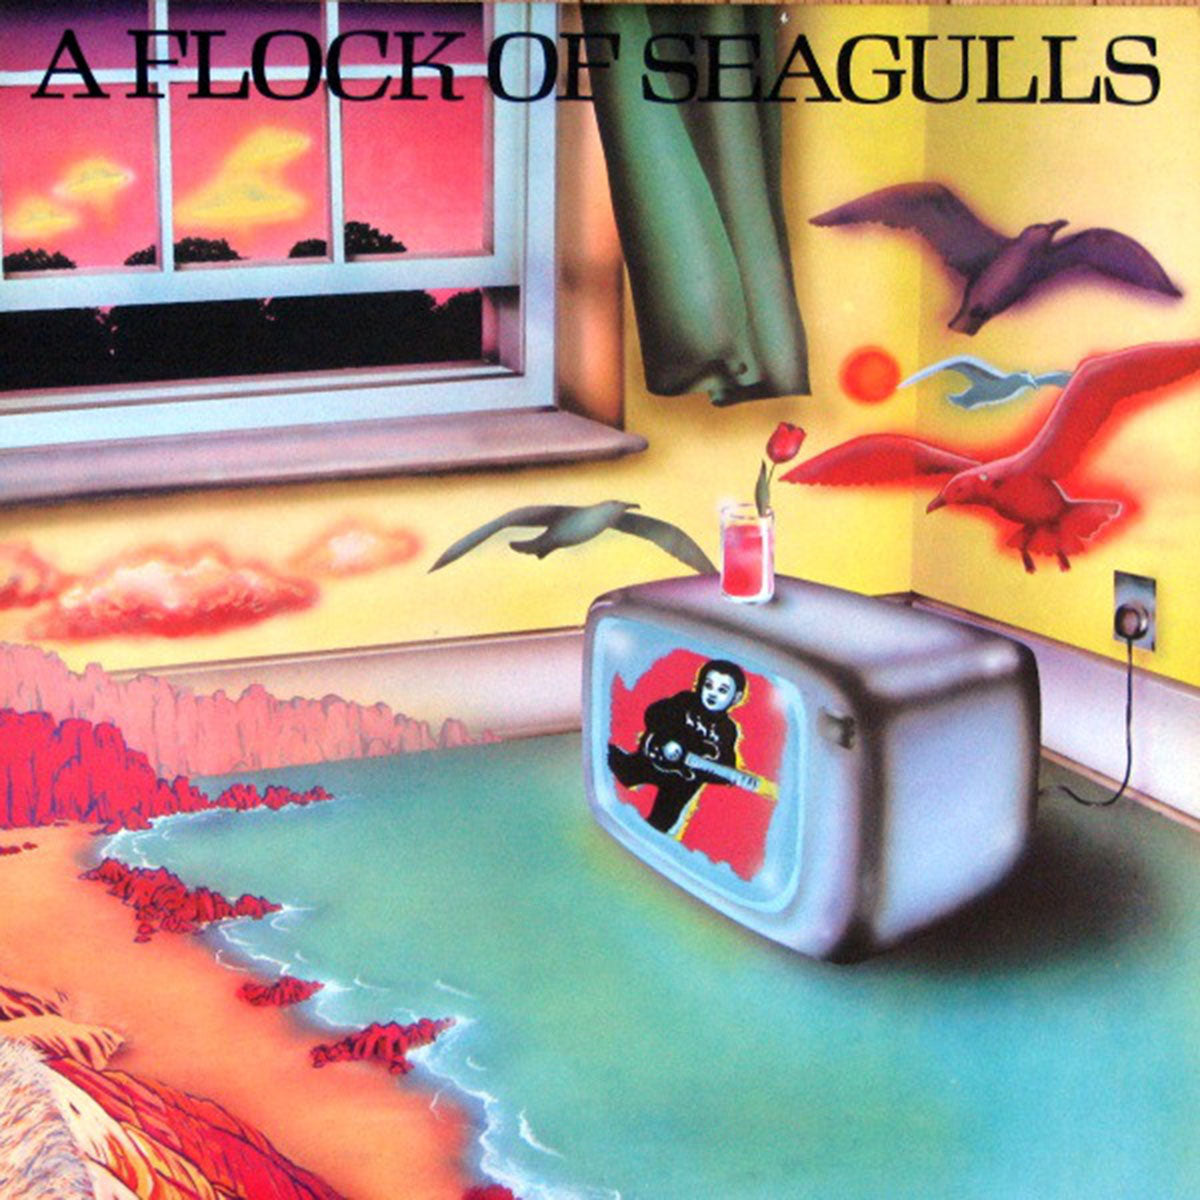 A Flock Of Seagulls – A Flock Of Seagulls